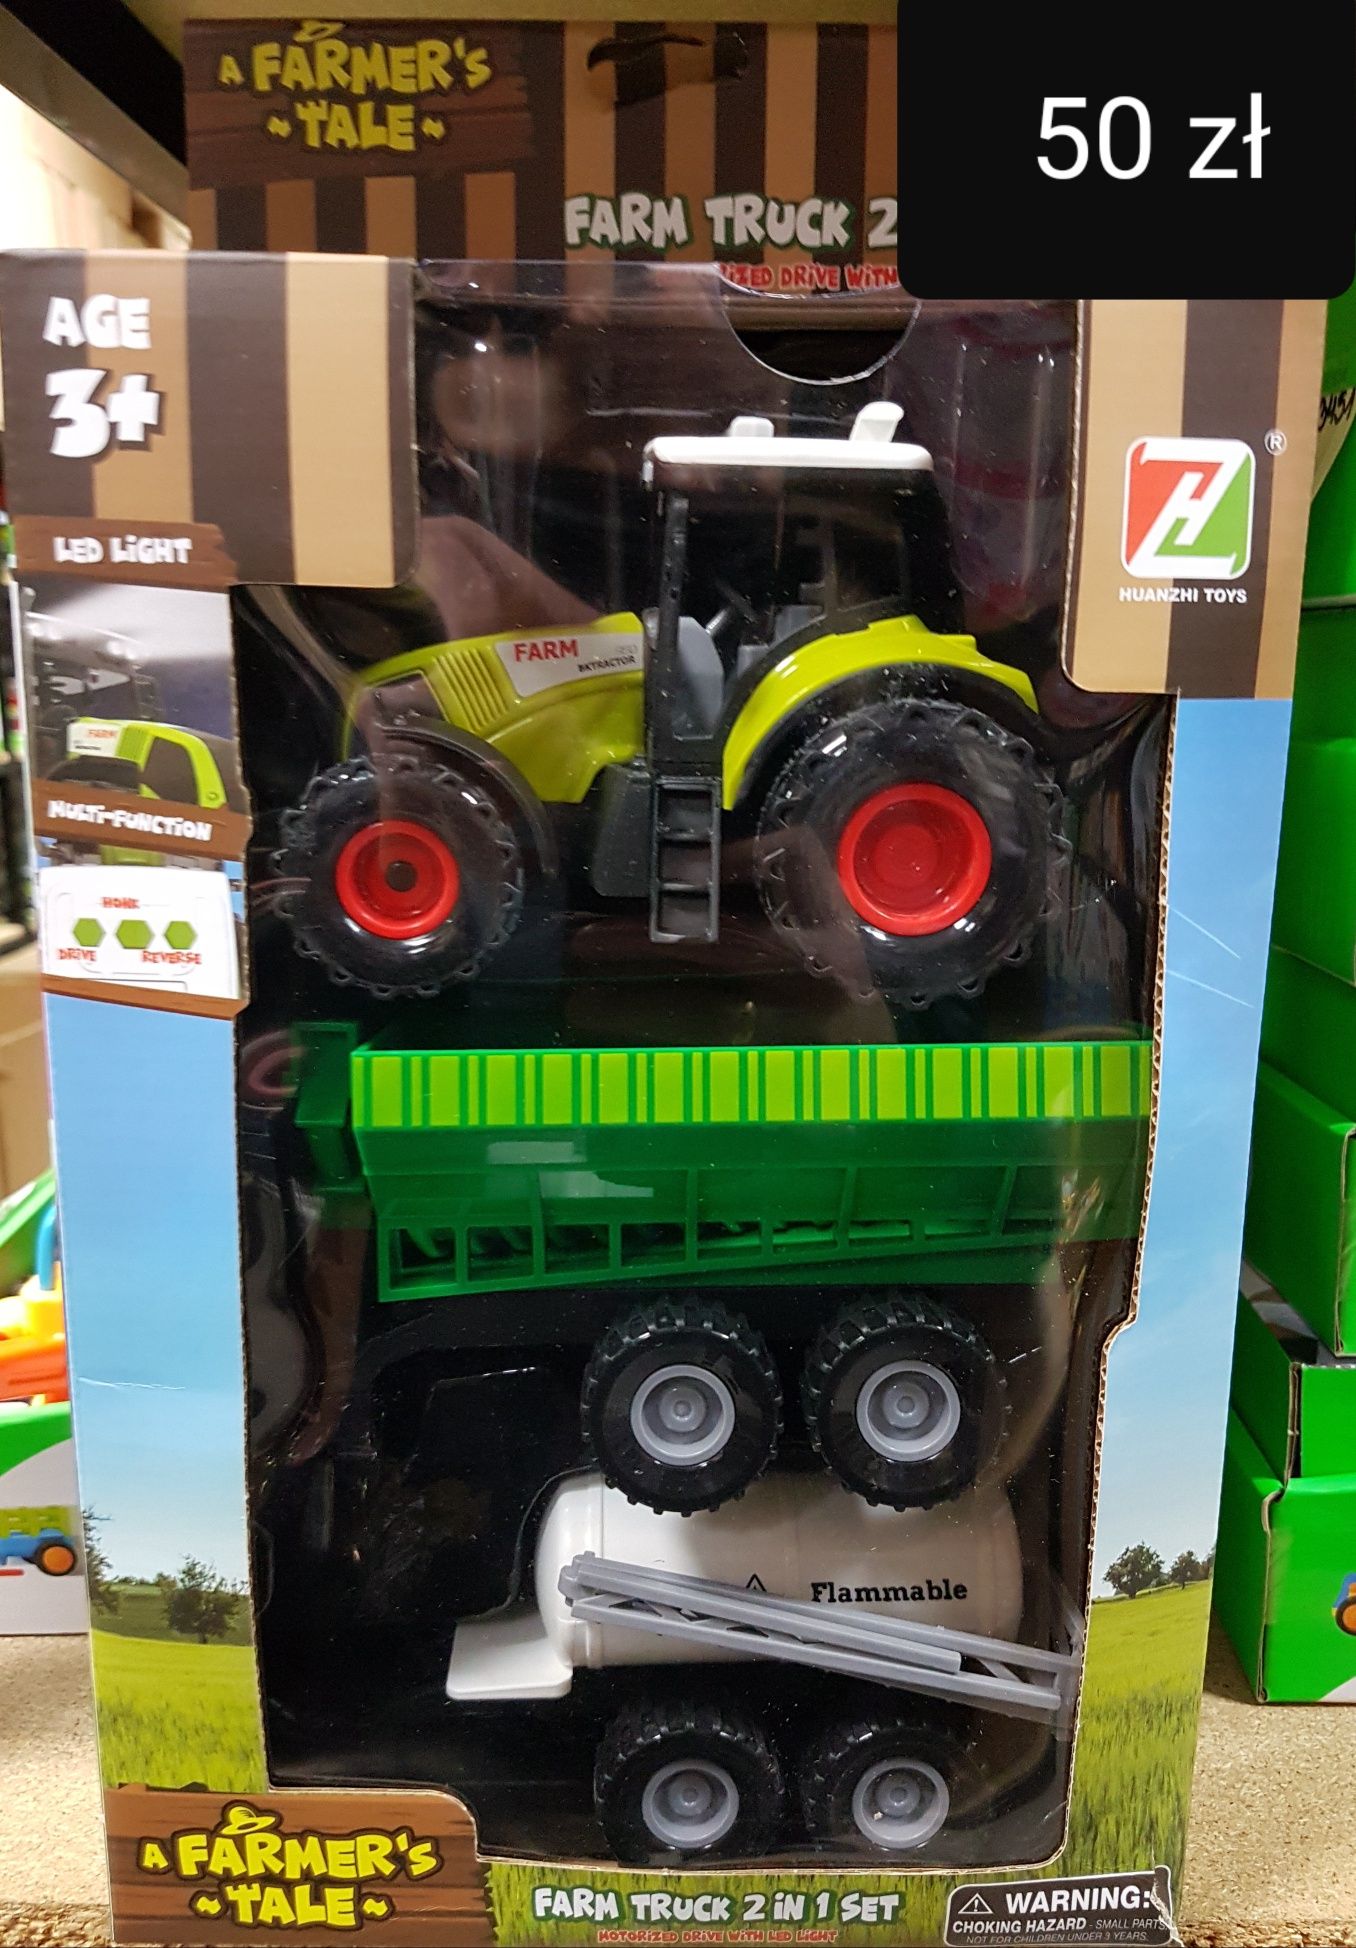 Zestaw Farmerski Traktor i maszyny rolnicze